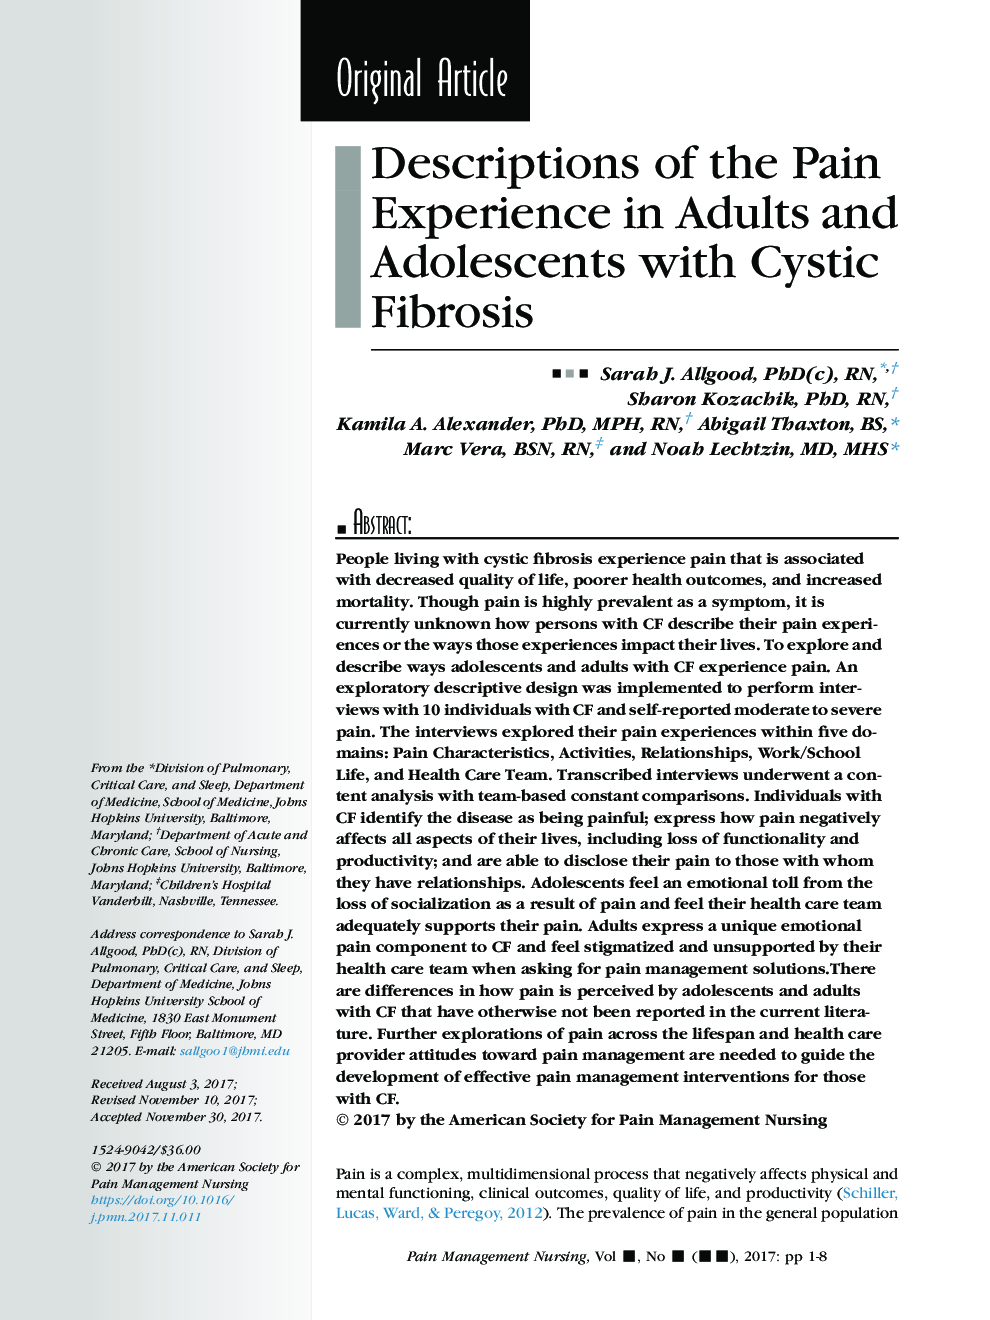 شرح تجربه درد در بزرگسالان و نوجوانان با فیبرسیسمی 